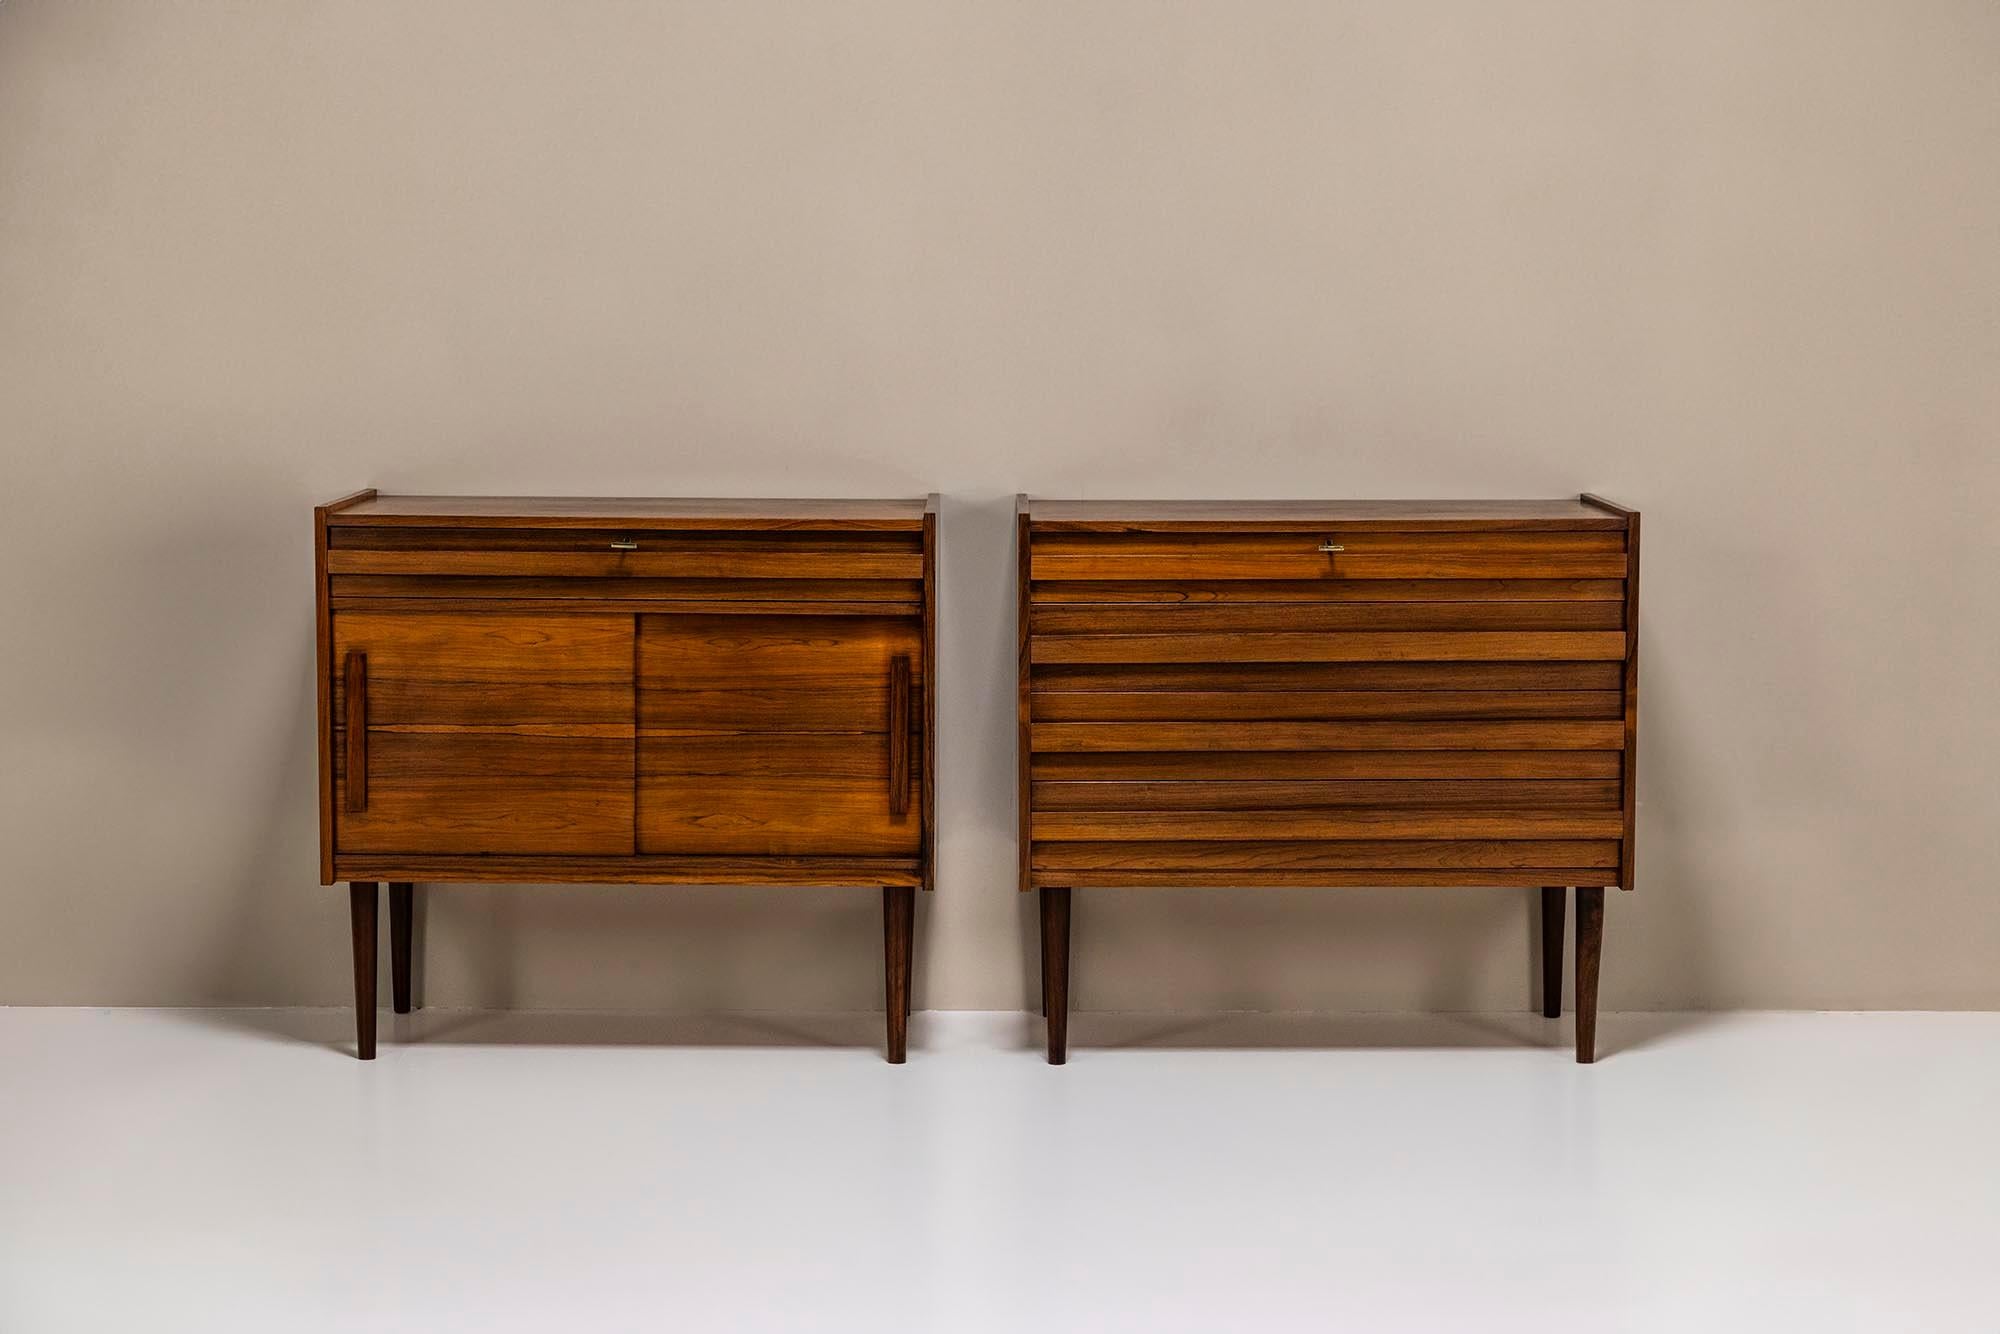 Charmant ensemble de deux armoires vintage en palissandre plaqué du Danemark, très probablement des années 1960. Cet ensemble se compose d'une commode et d'une armoire avec un tiroir et deux portes coulissantes. Les armoires peuvent être utilisées